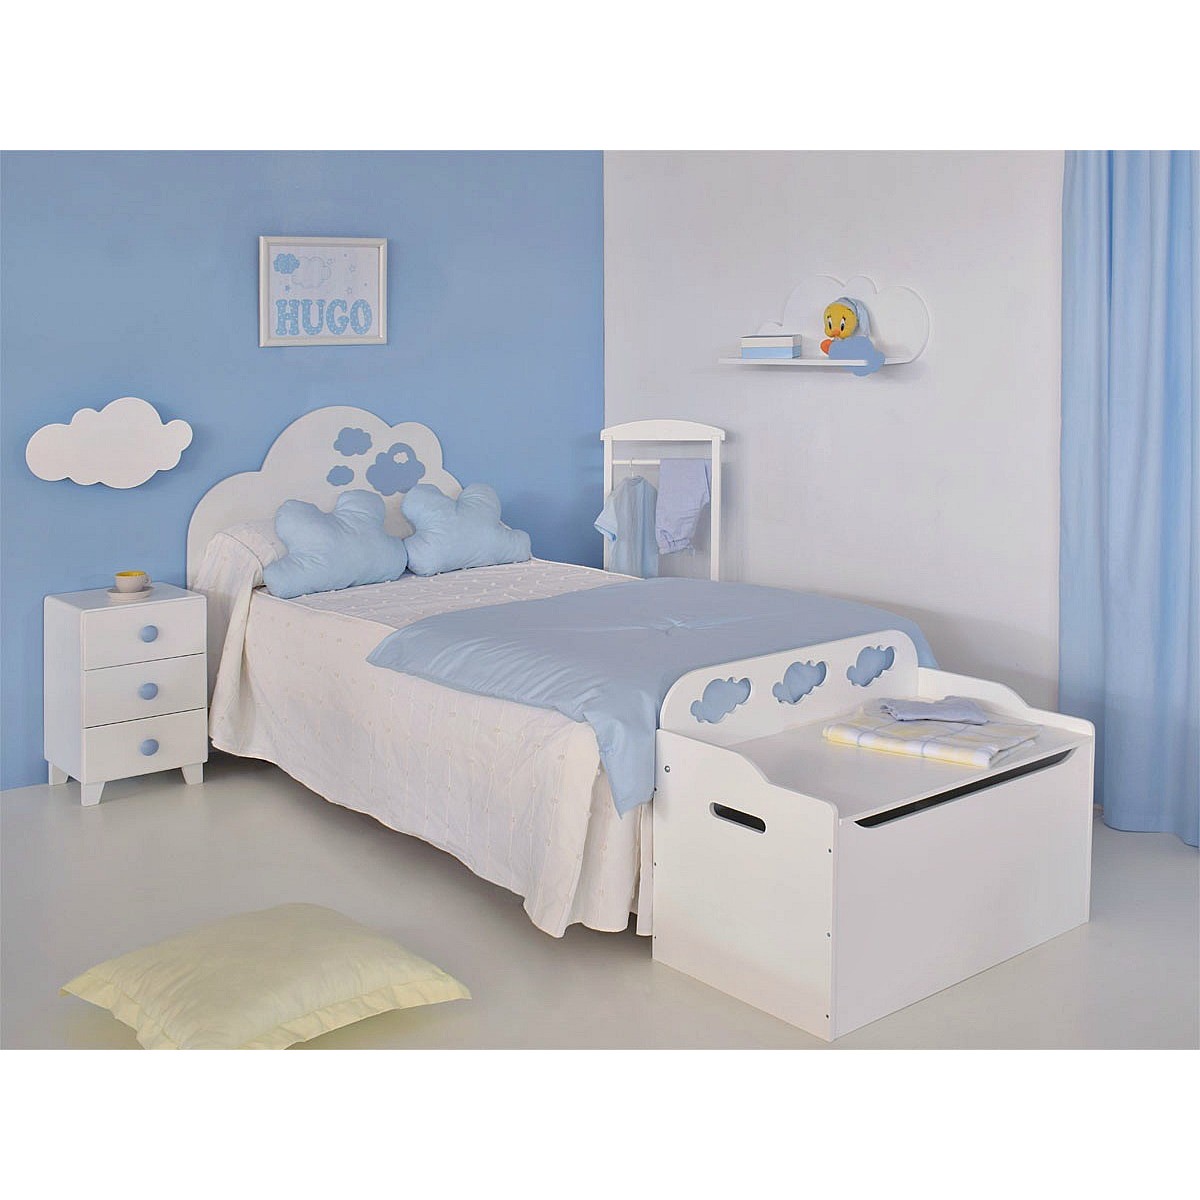 Baúl de juguete en MDF blanco para dormitorio infantil - Mobili